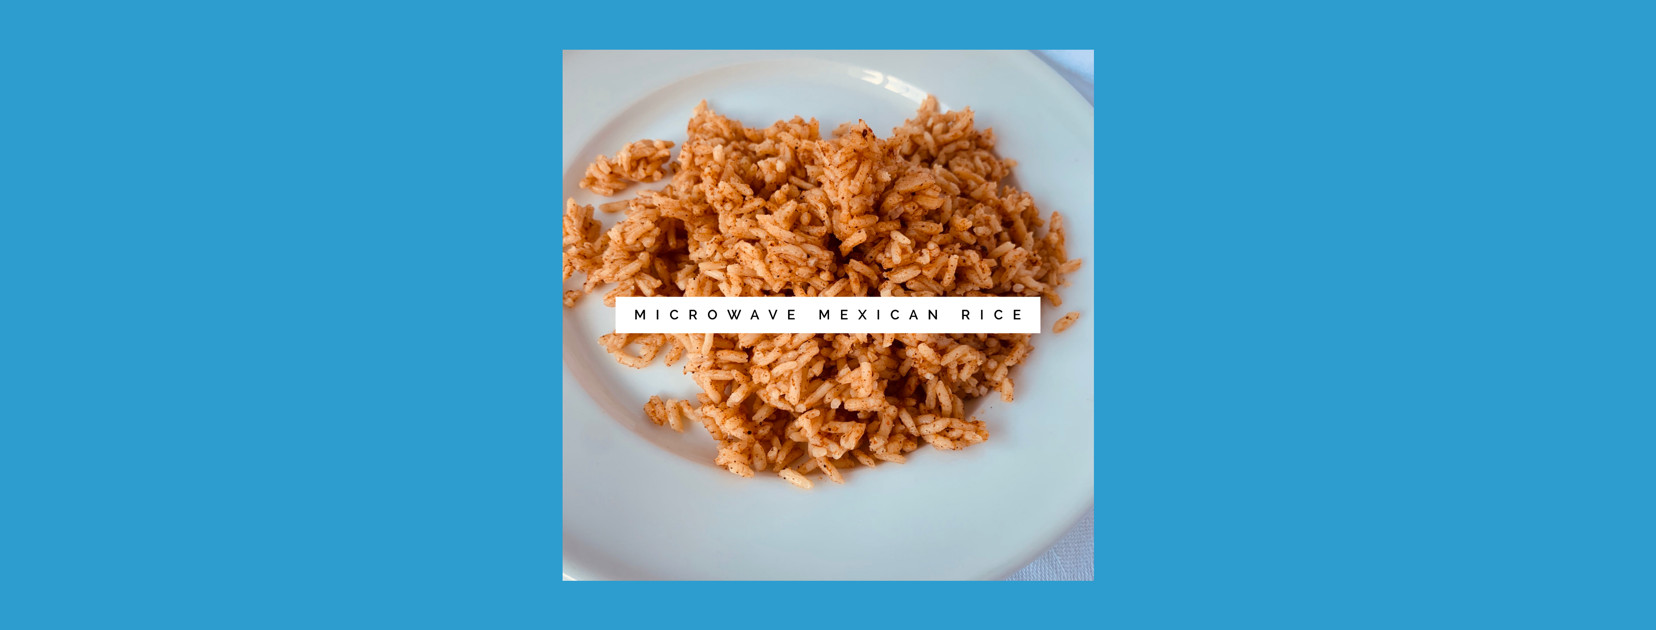 Microwave Mexican Rice
 Microwave Mexican Rice With Instant Pot Option – Marie